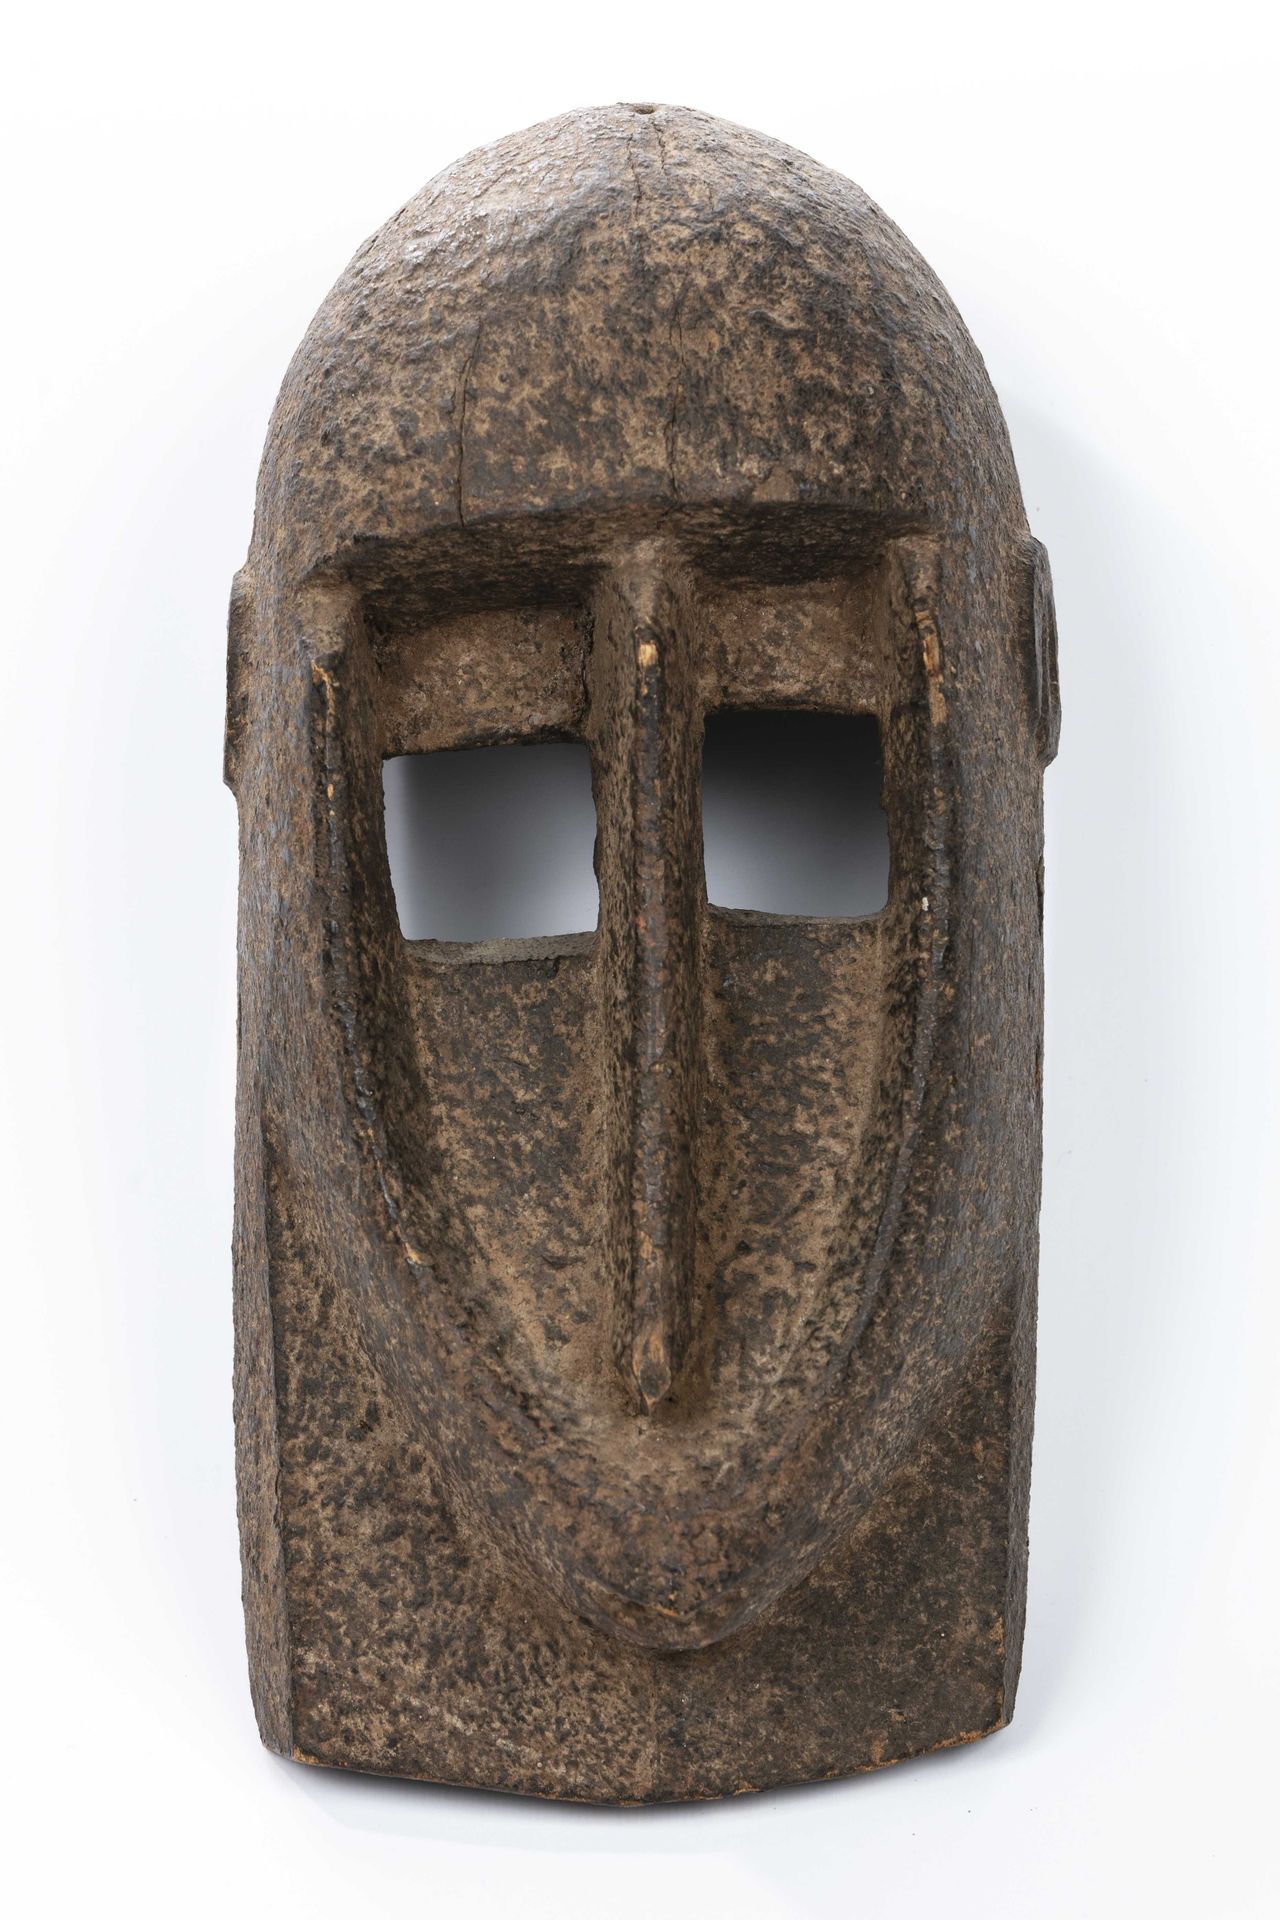 Null Maschera in stile Dogon, Mali 
Legno con patina incrostata 
Altezza: 29 cm &hellip;